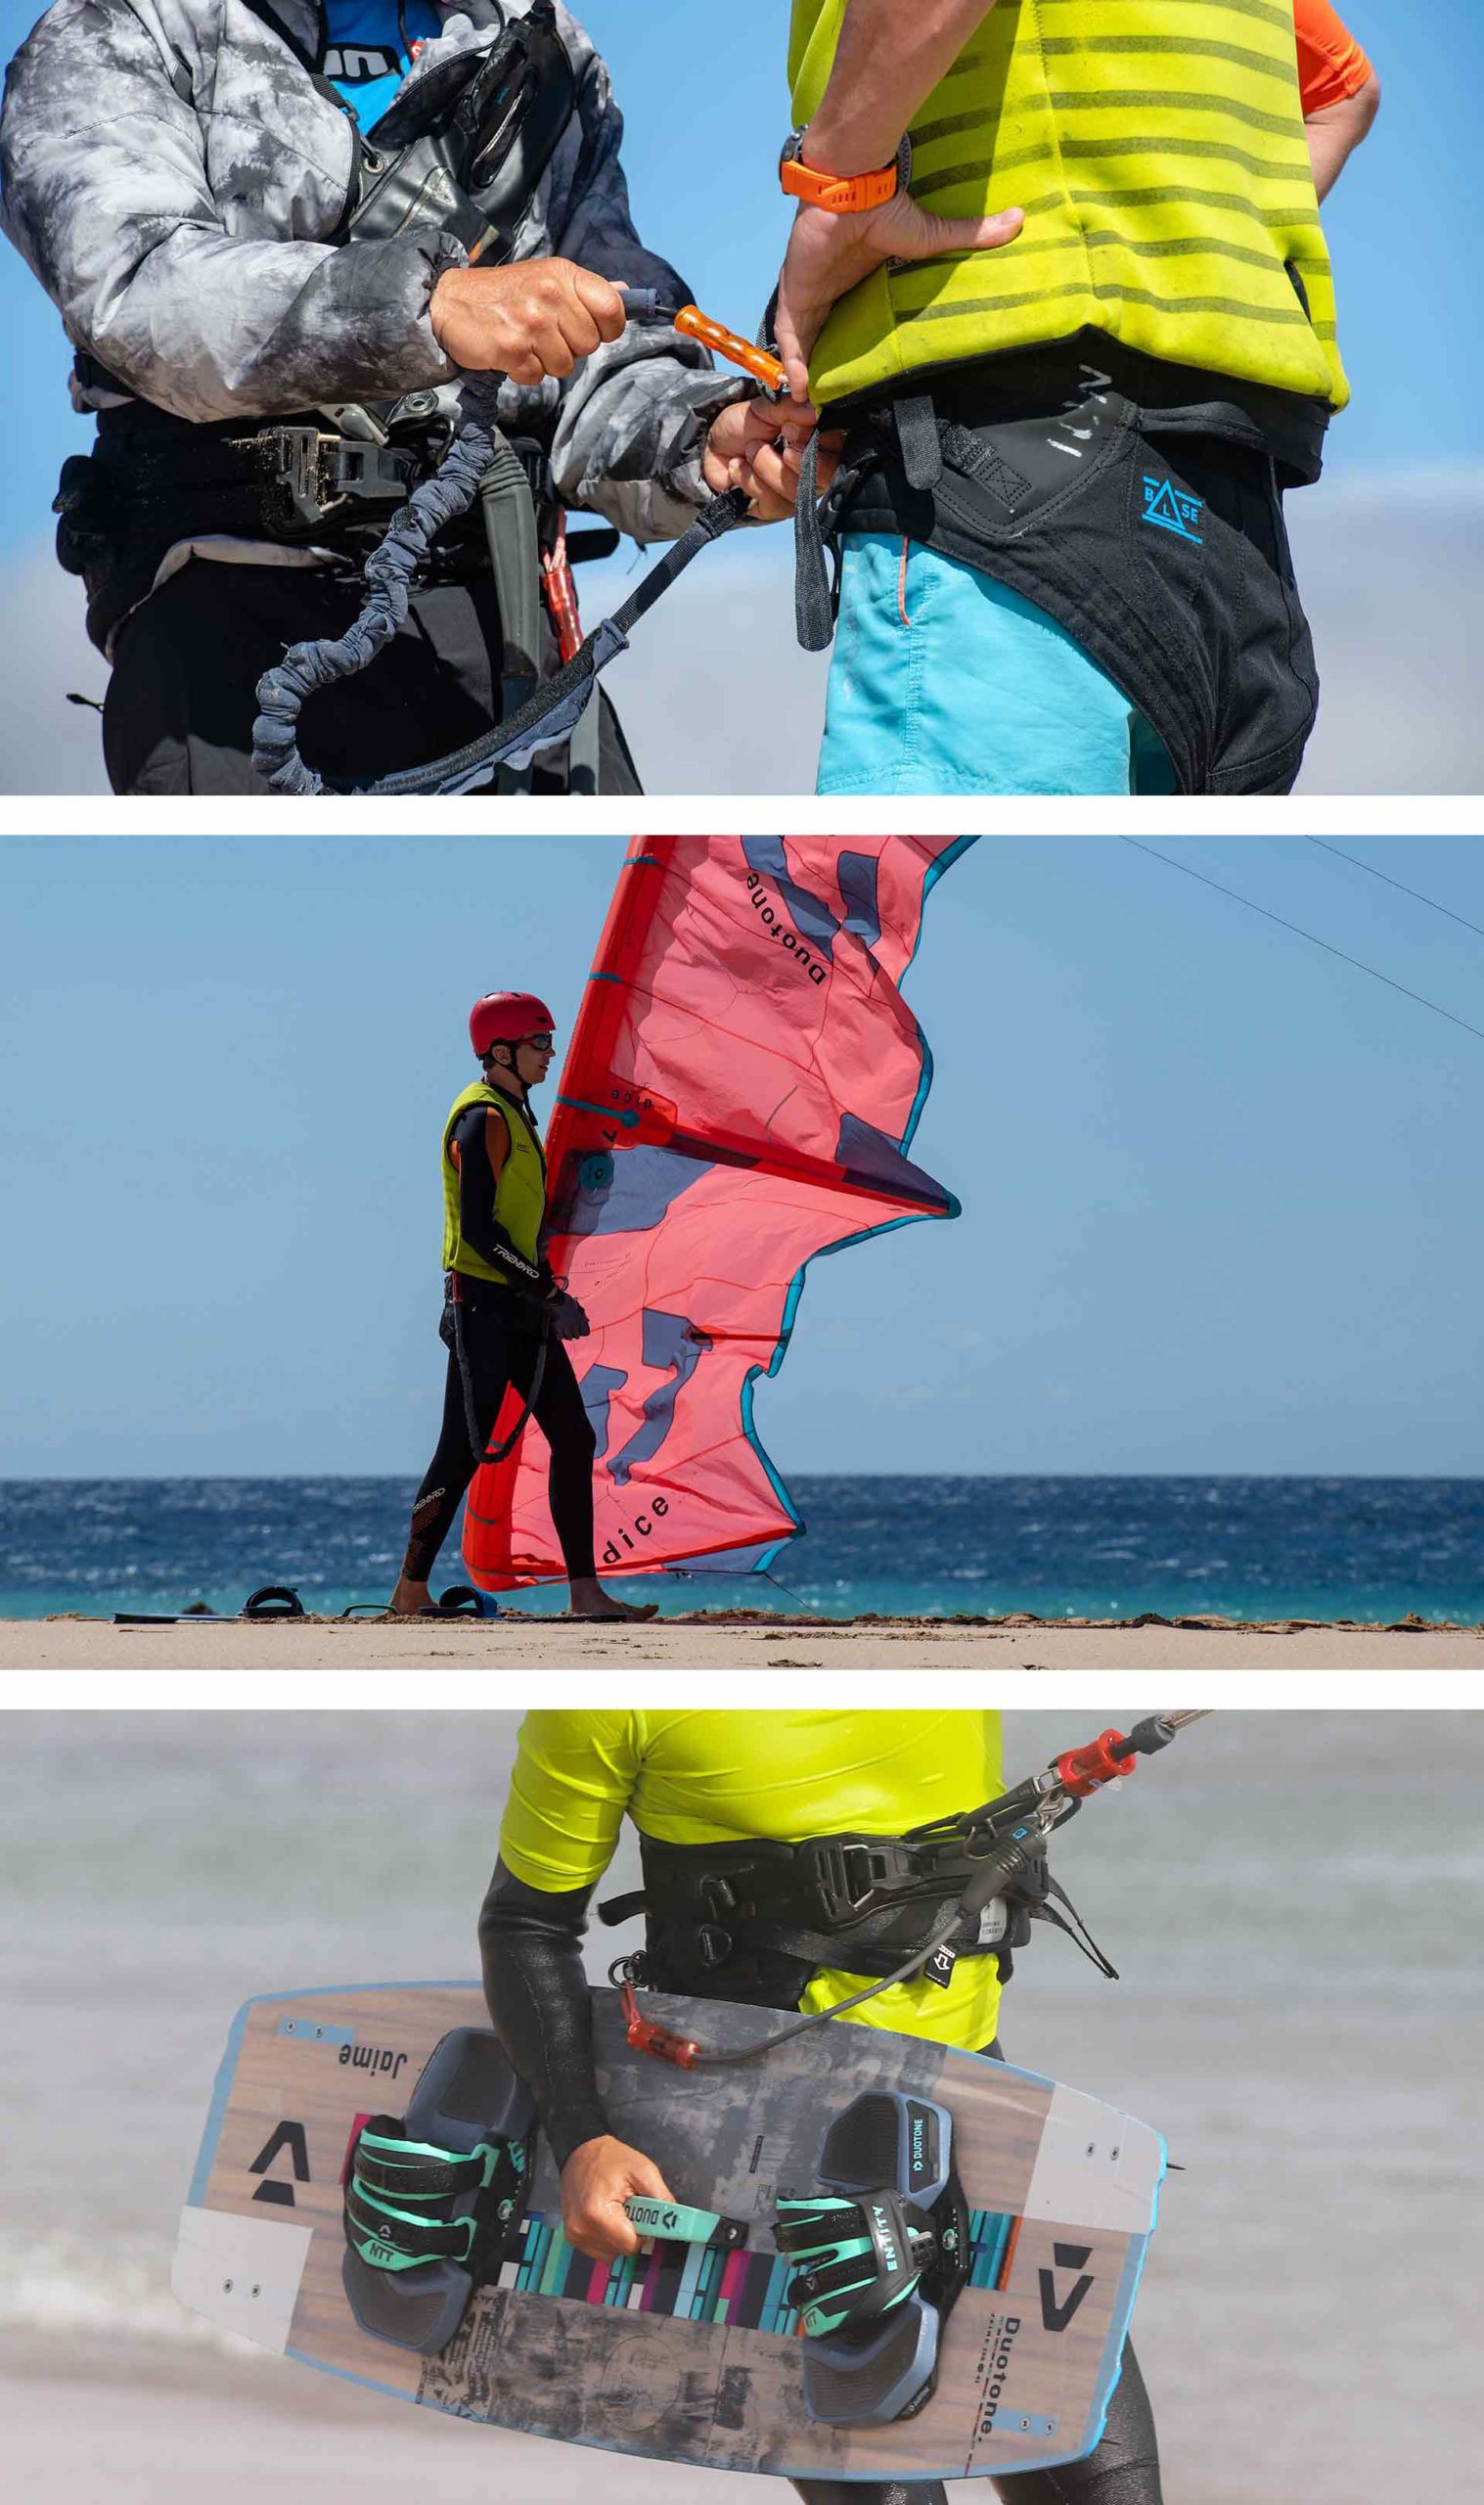 Un instructeur enseignant comment attacher le leash au harnais de kitesurf, un étudiant du cours de kitesurf tenant un cerf-volant et un instructeur tenant une planche de kitesurf afin d'entrer dans l'eau pour naviguer.